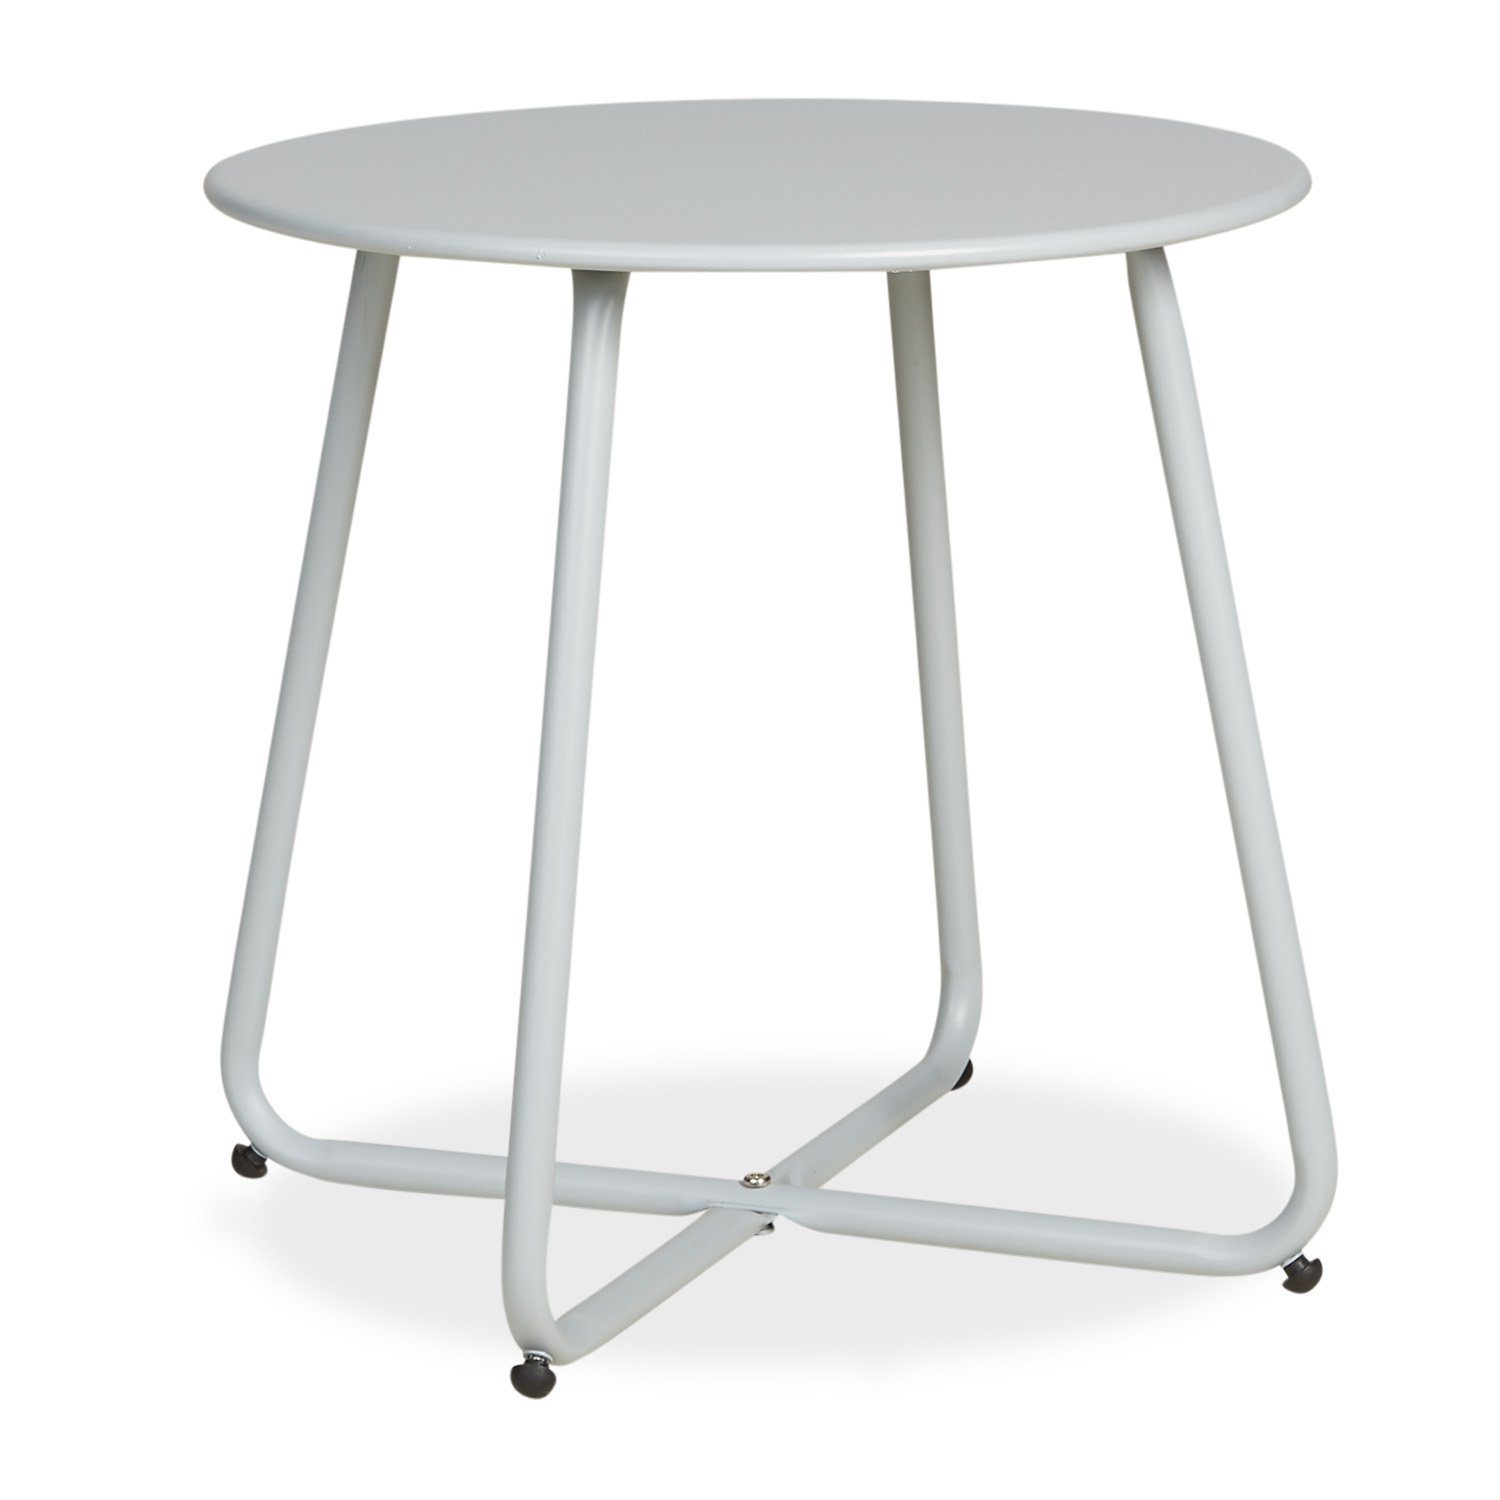 Homestyle4u Beistelltisch Gartentisch Rund Metall Balkontisch Tisch Kaffeetisch 45cm Durchmesser, Grau